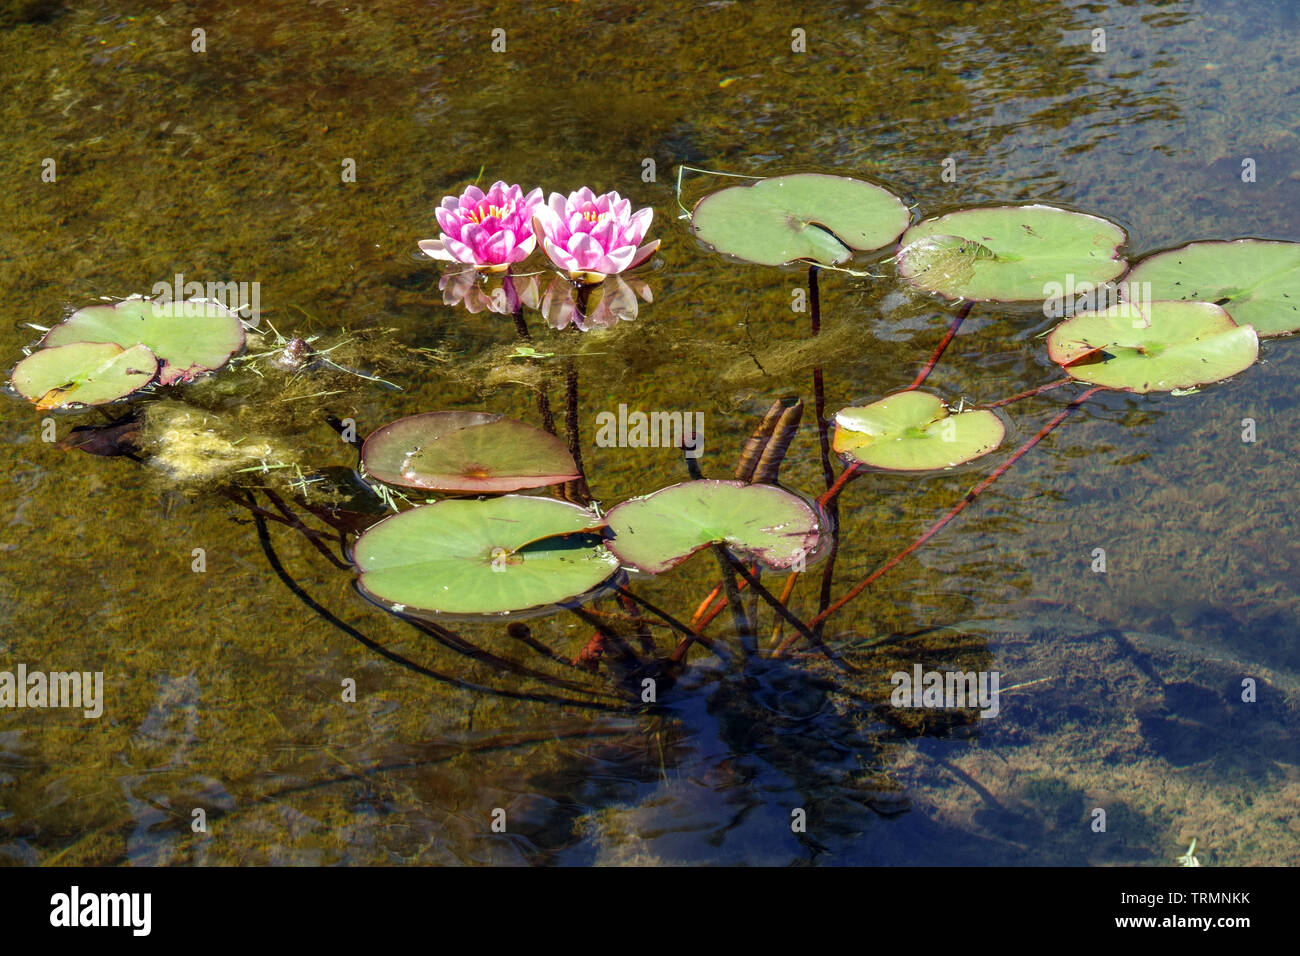 Seerose blumen Stängel und Blätter in Wasser Stockfoto